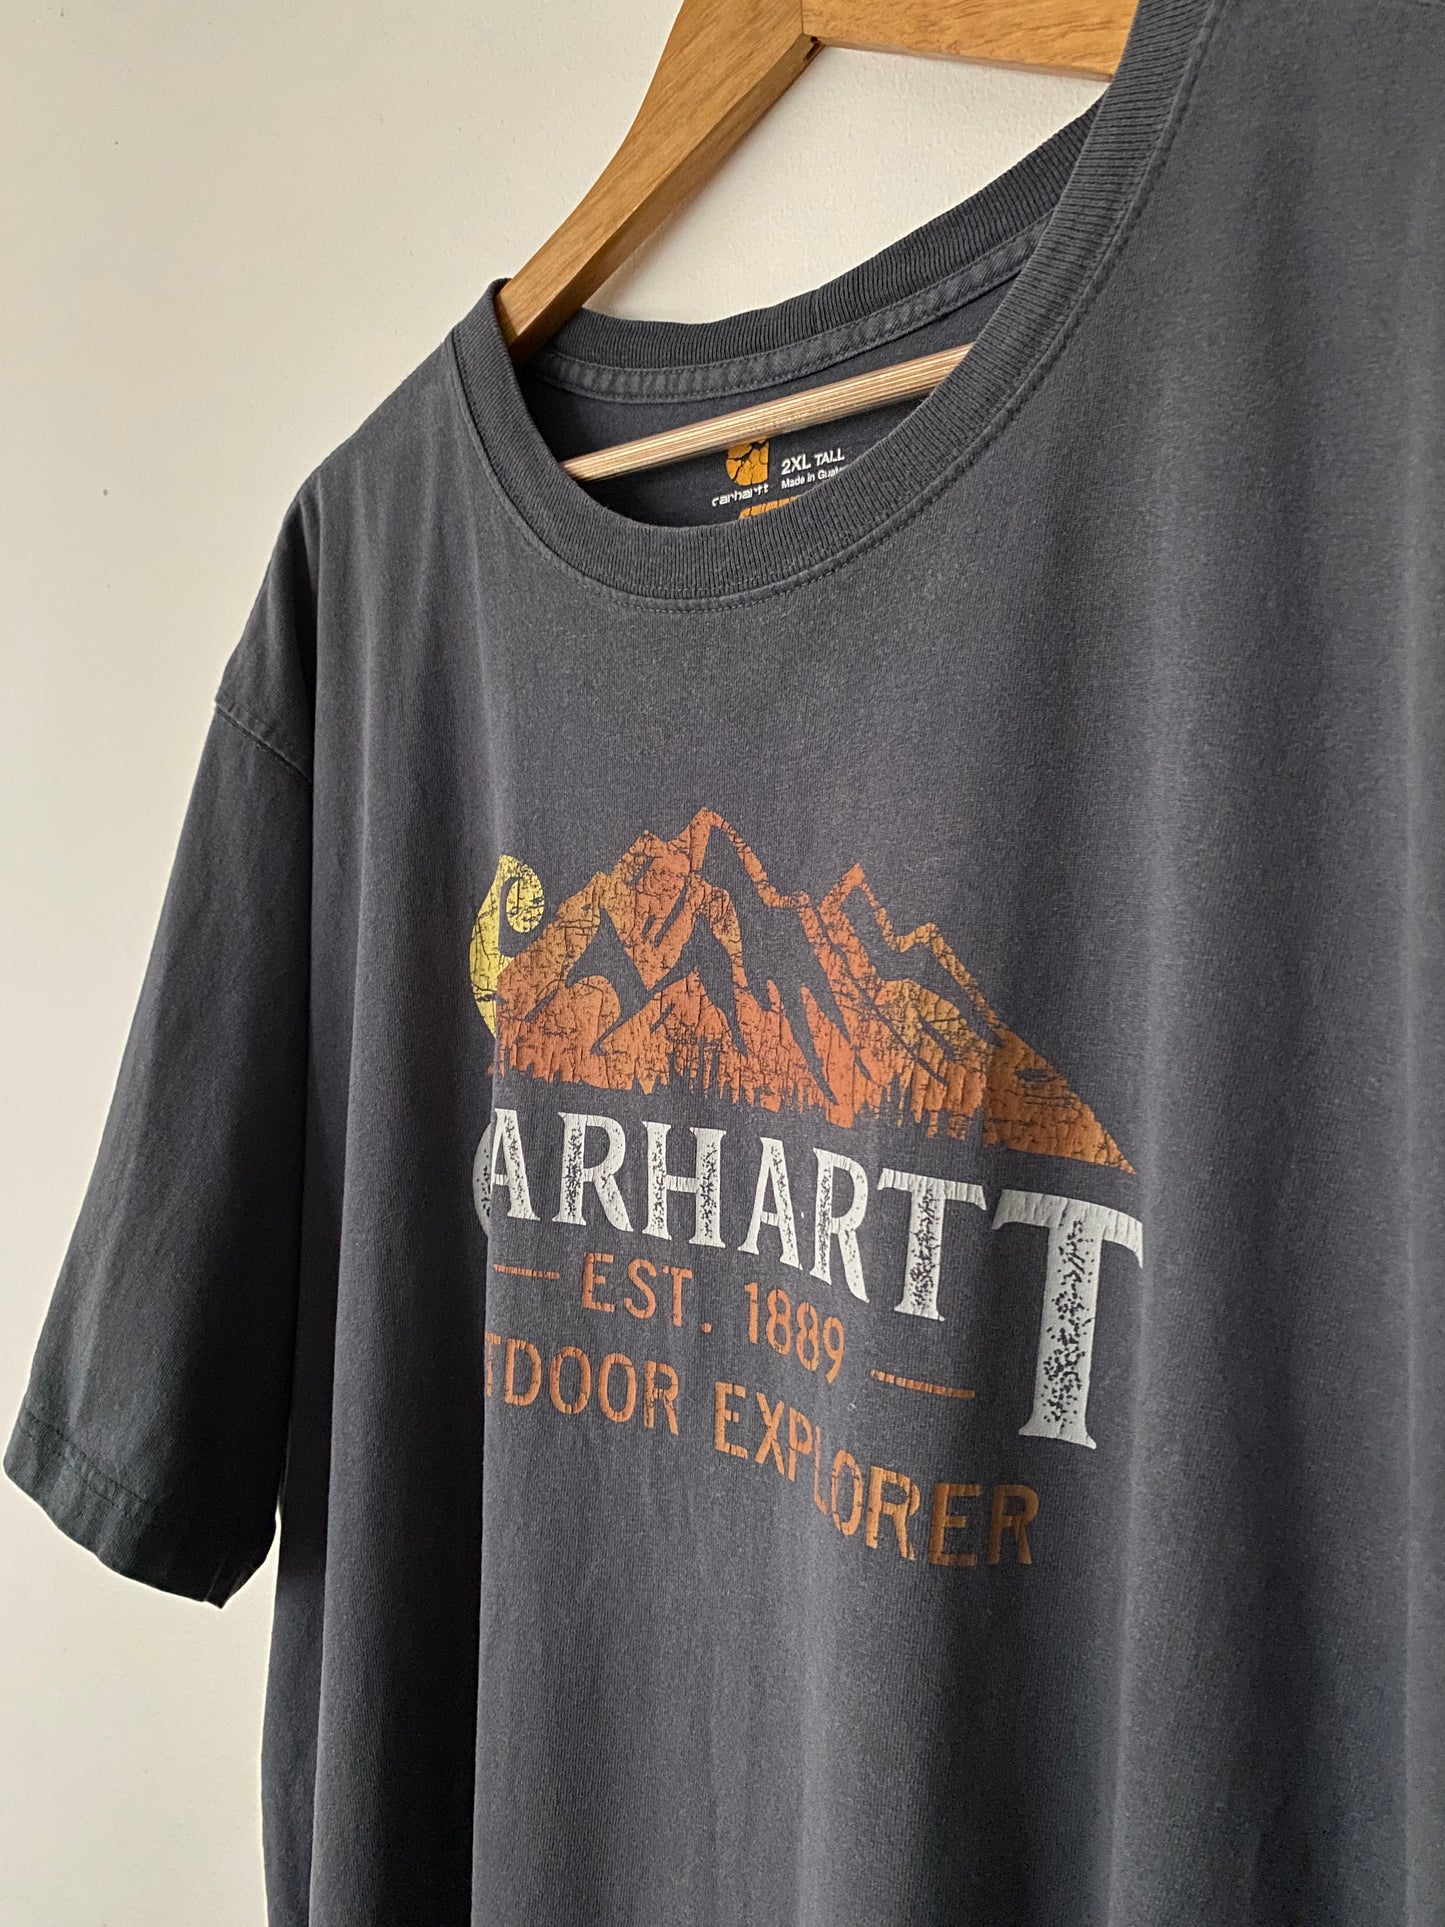 Carhartt Explorer Graphic T-shirt - 2XL